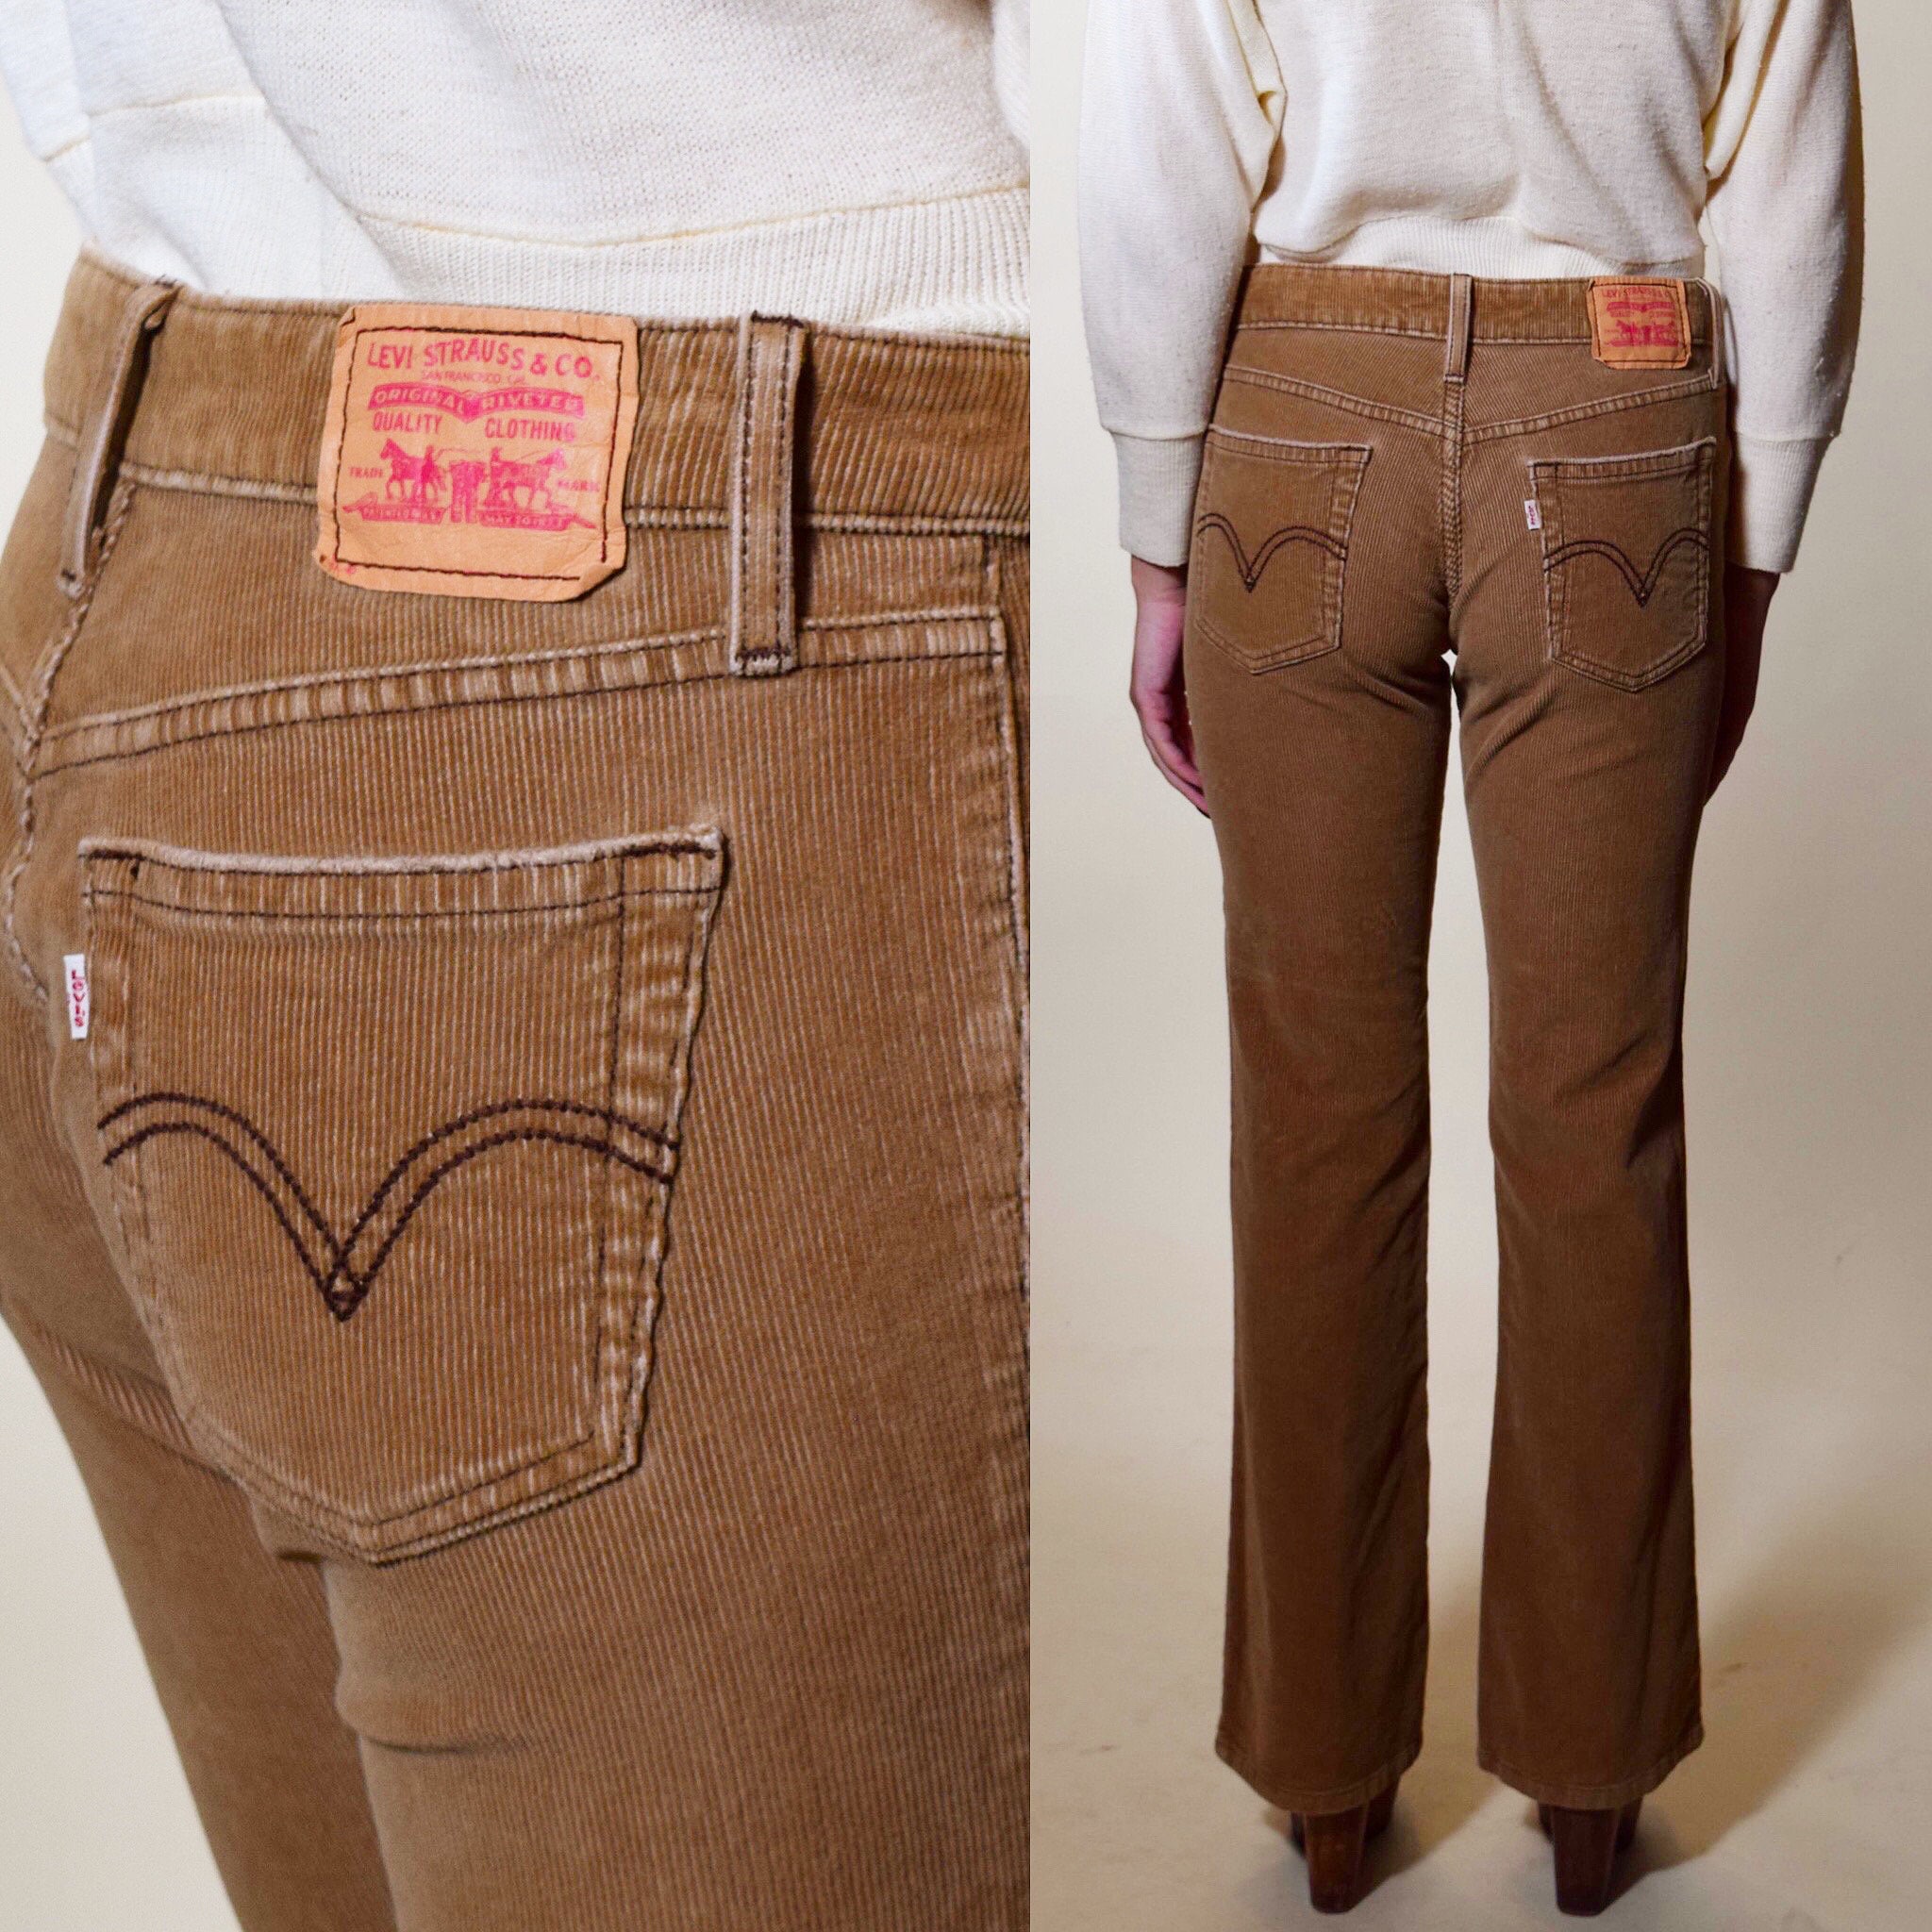 Vintage Levi's beige / brown corduroy mid rise boot cut pants women's size  5 / medium / 30 Waist